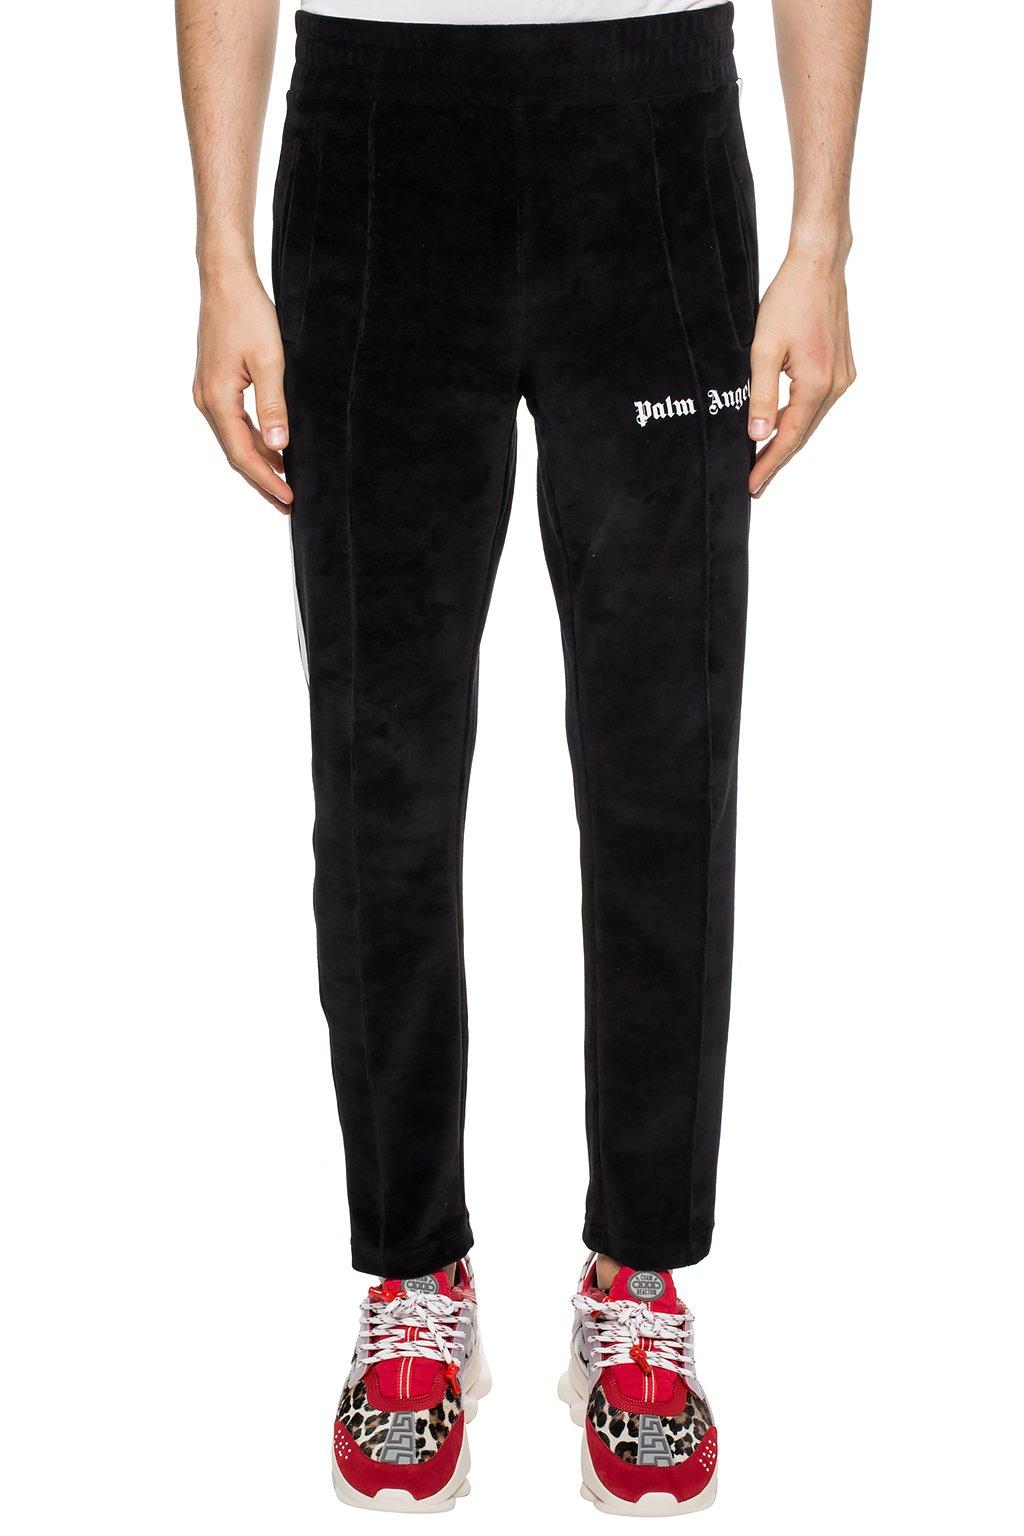 Palm Angels Side-stripe Sweatpants in Black for Men - Lyst